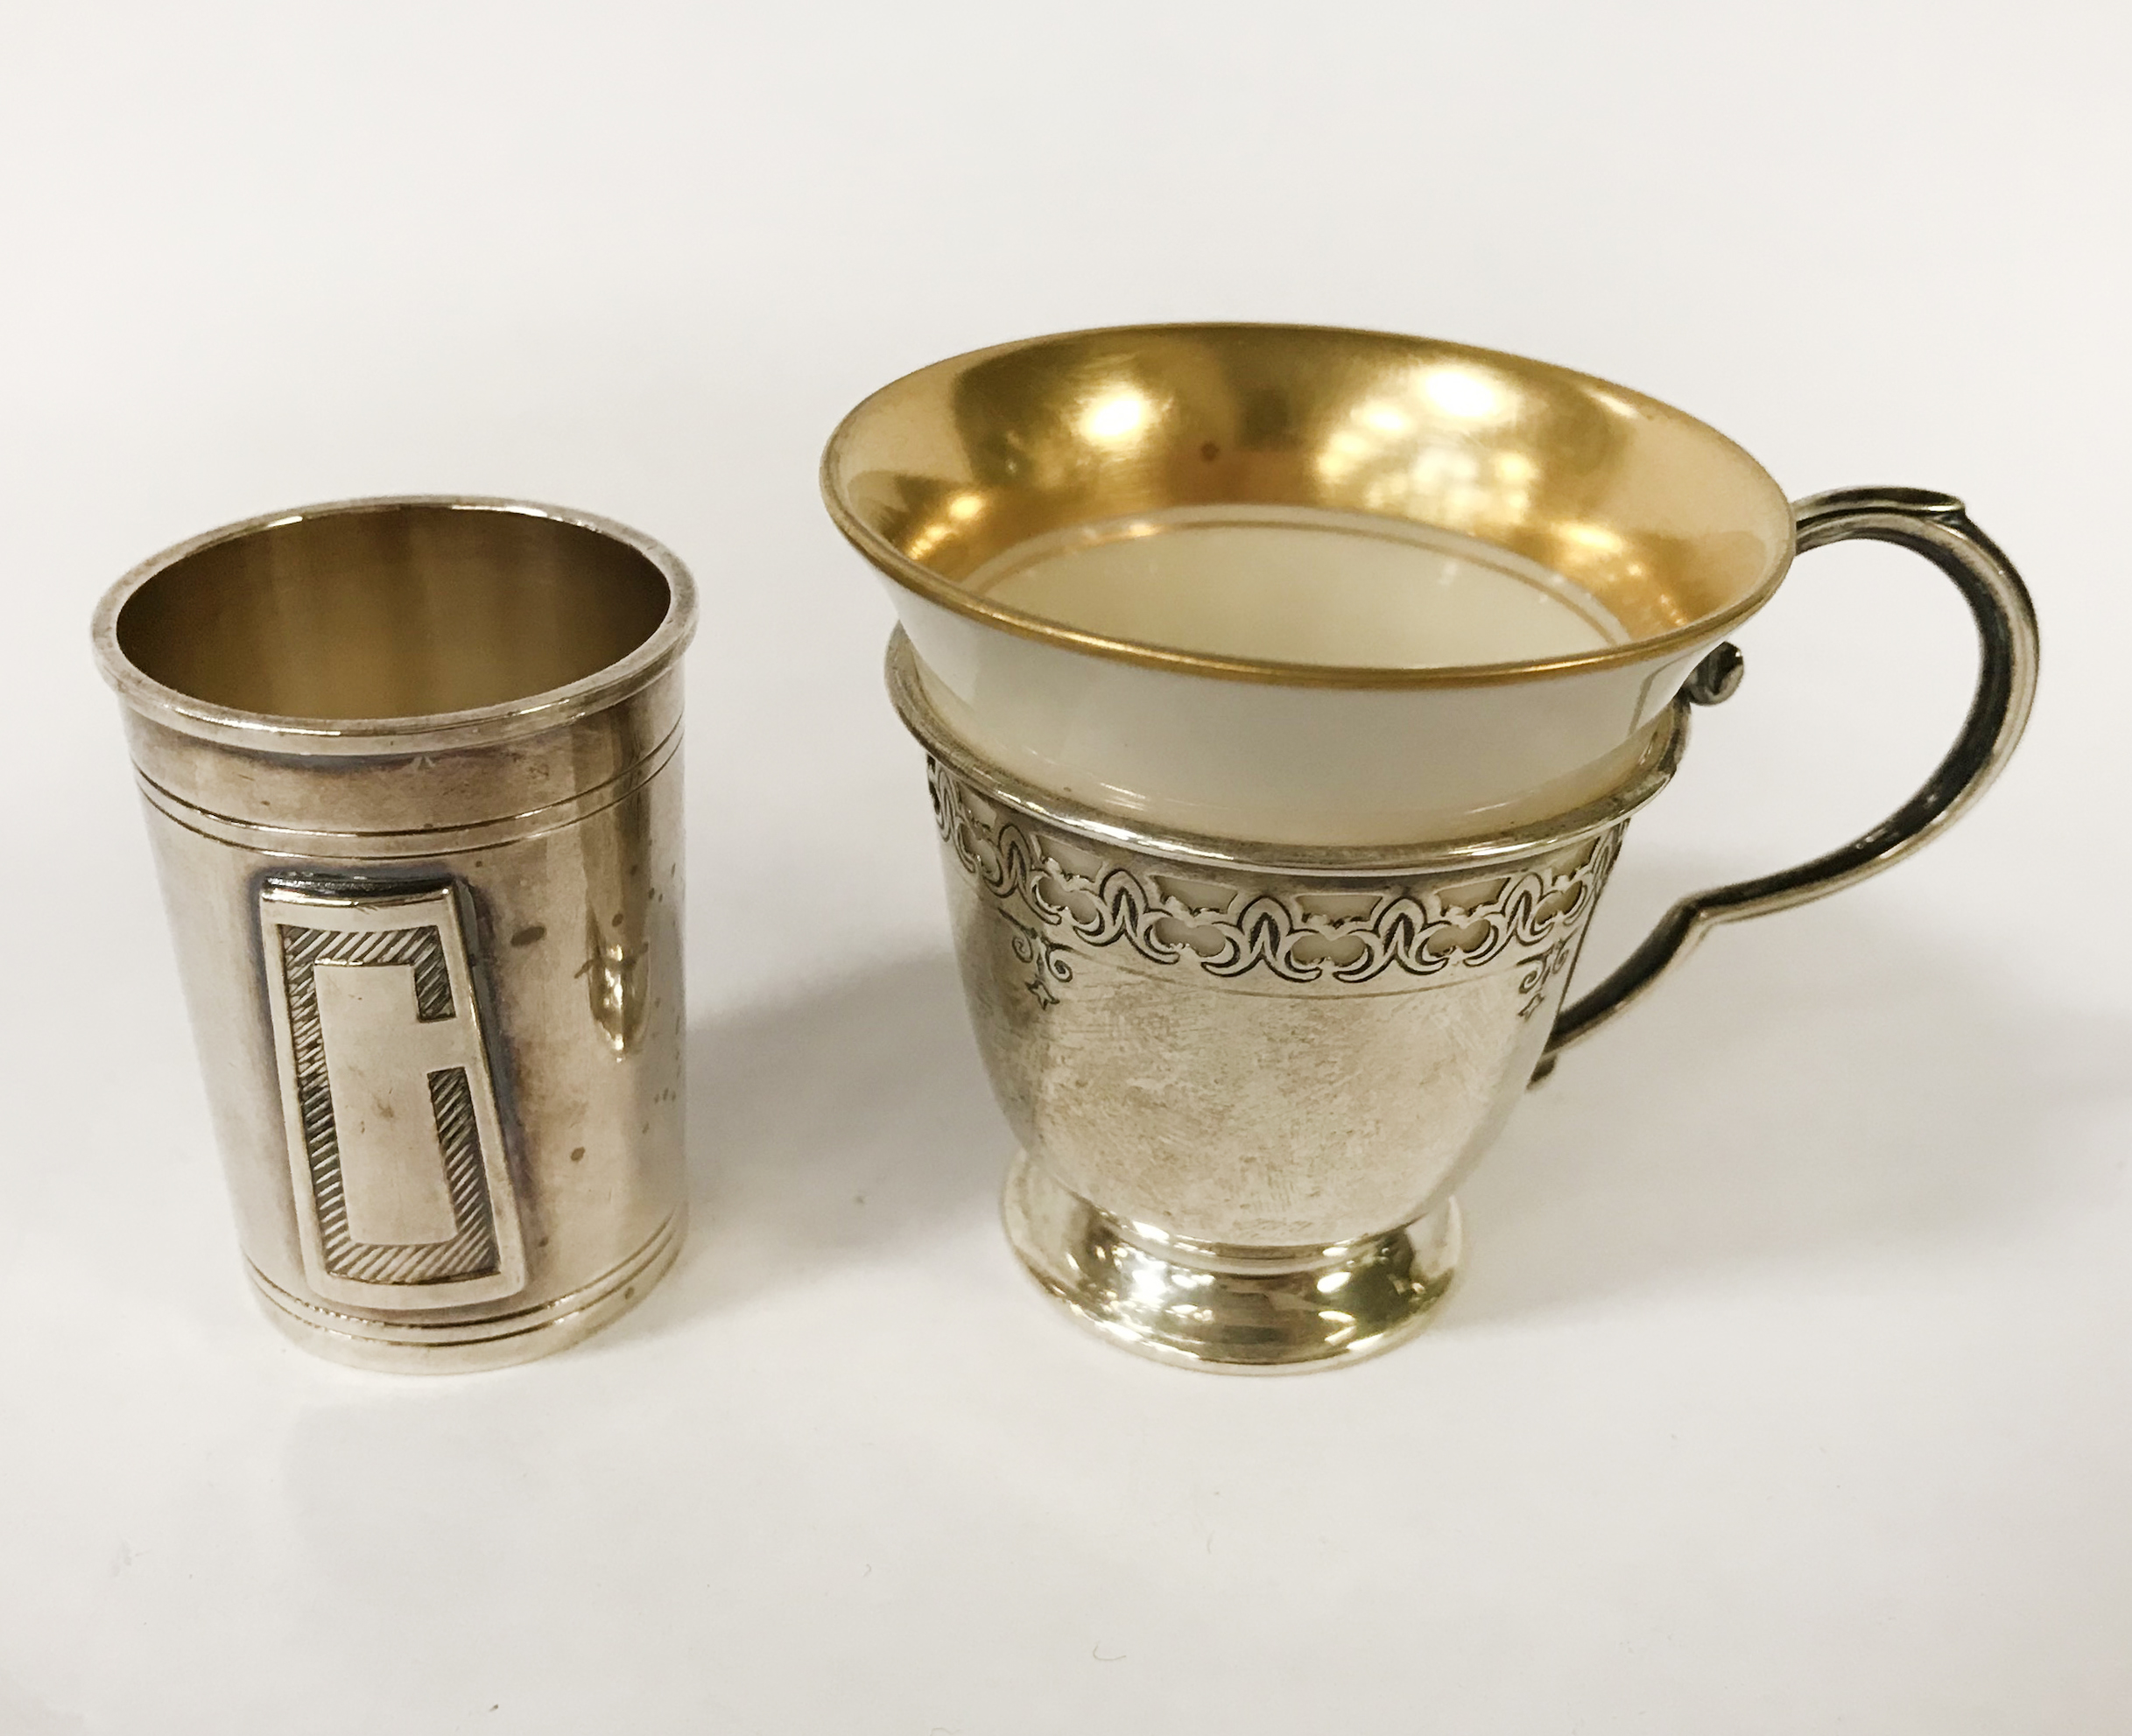 HM SILVER & PORCELAIN CUP & CLARIDGES SILVER PLATE SHOT GLASS